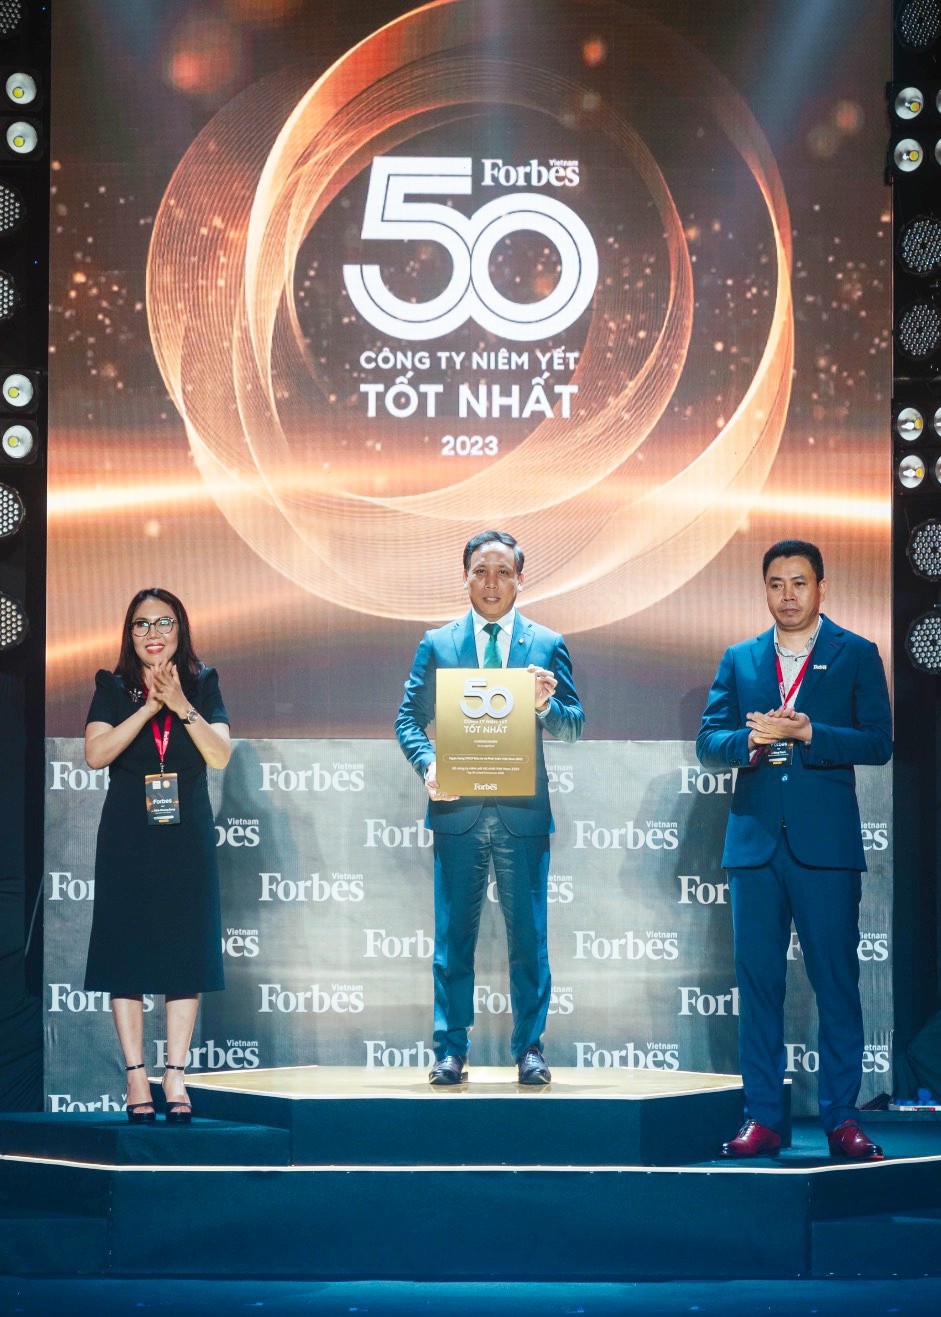 Đại diện BIDV nhận giải thưởng Top 50 công ty niêm yết tốt nhất Việt Nam 